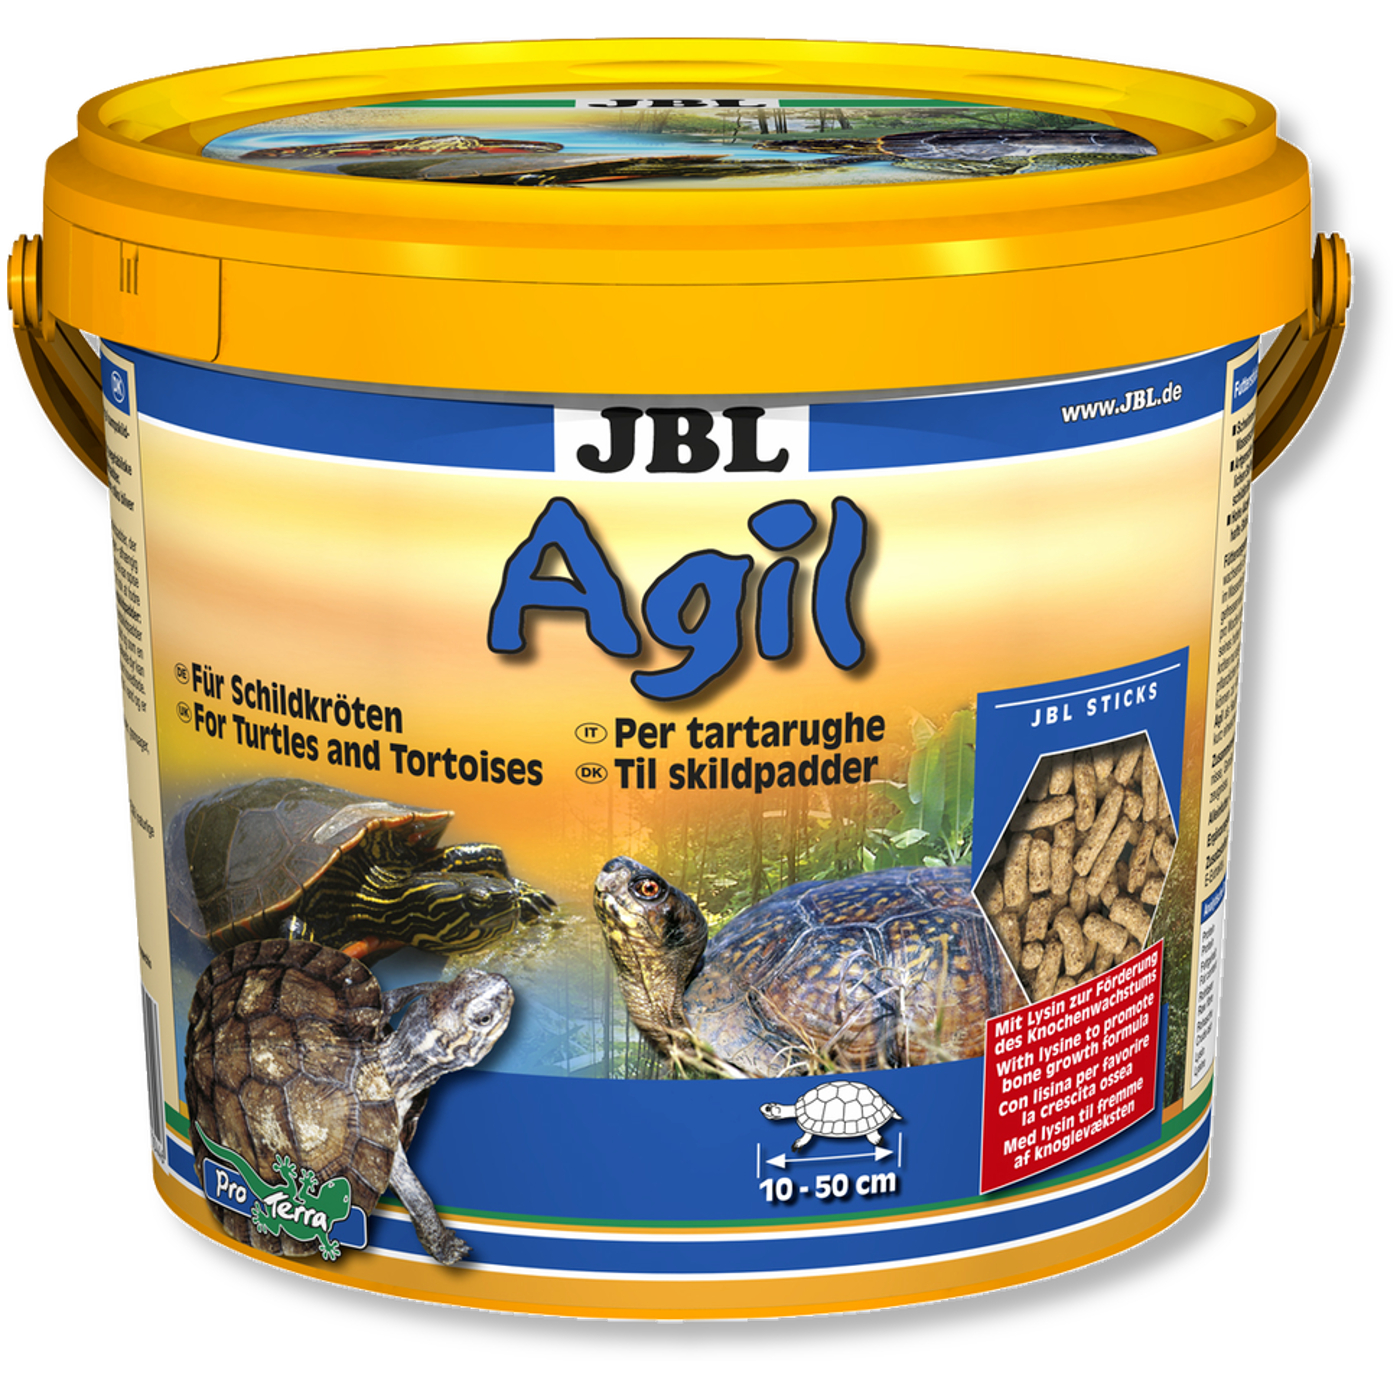 JBL Agil Futtersticks 12.500 ml